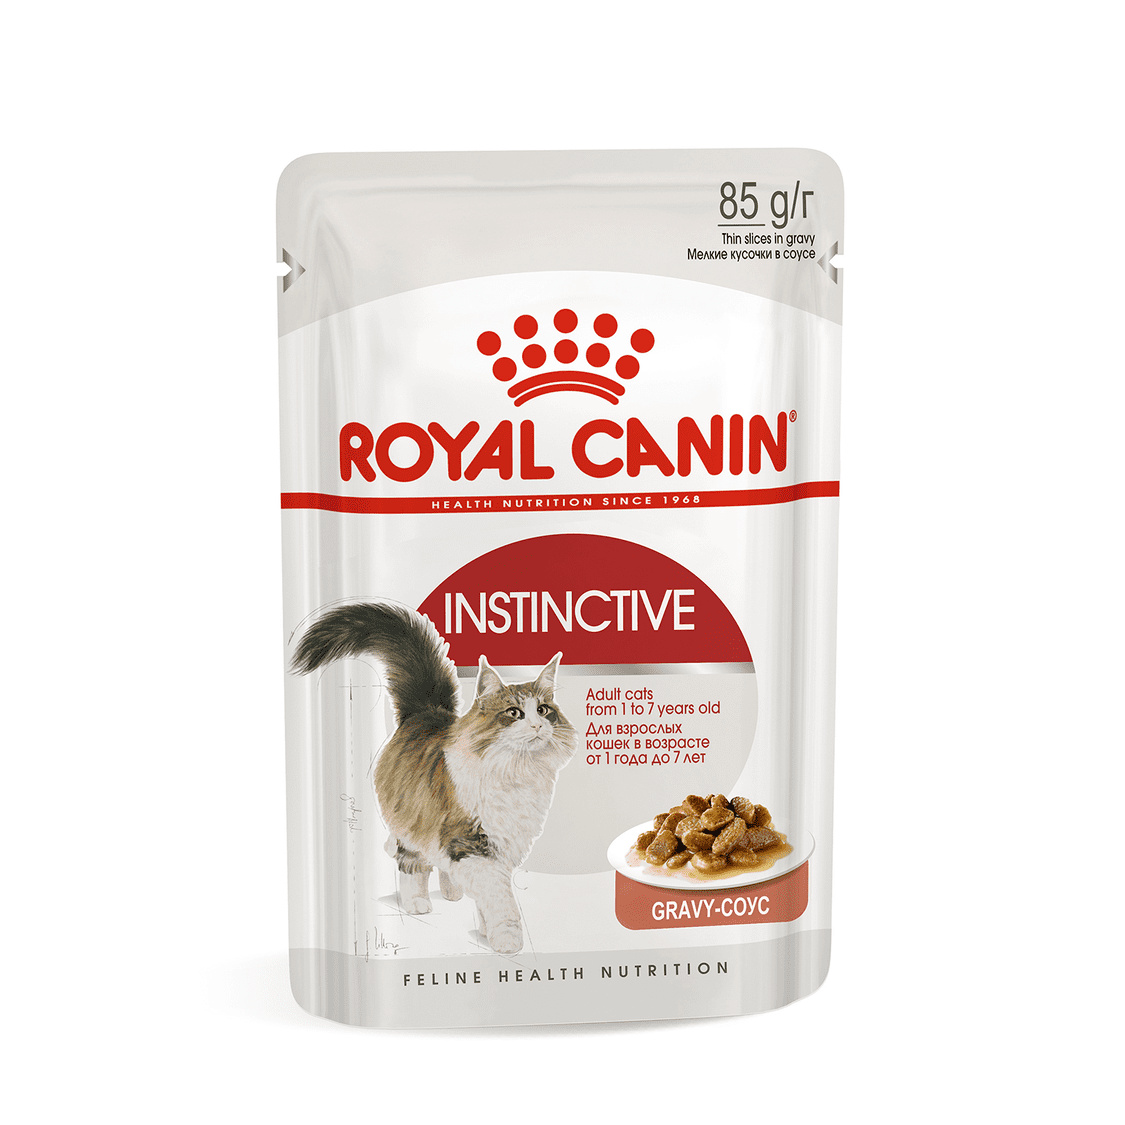 Royal Canin паучи Royal Canin паучи кусочки в соусе для кошек 1-7 лет (85 г) royal canin паучи royal canin паучи кусочки в соусе для кошек 1 7 лет 85 г